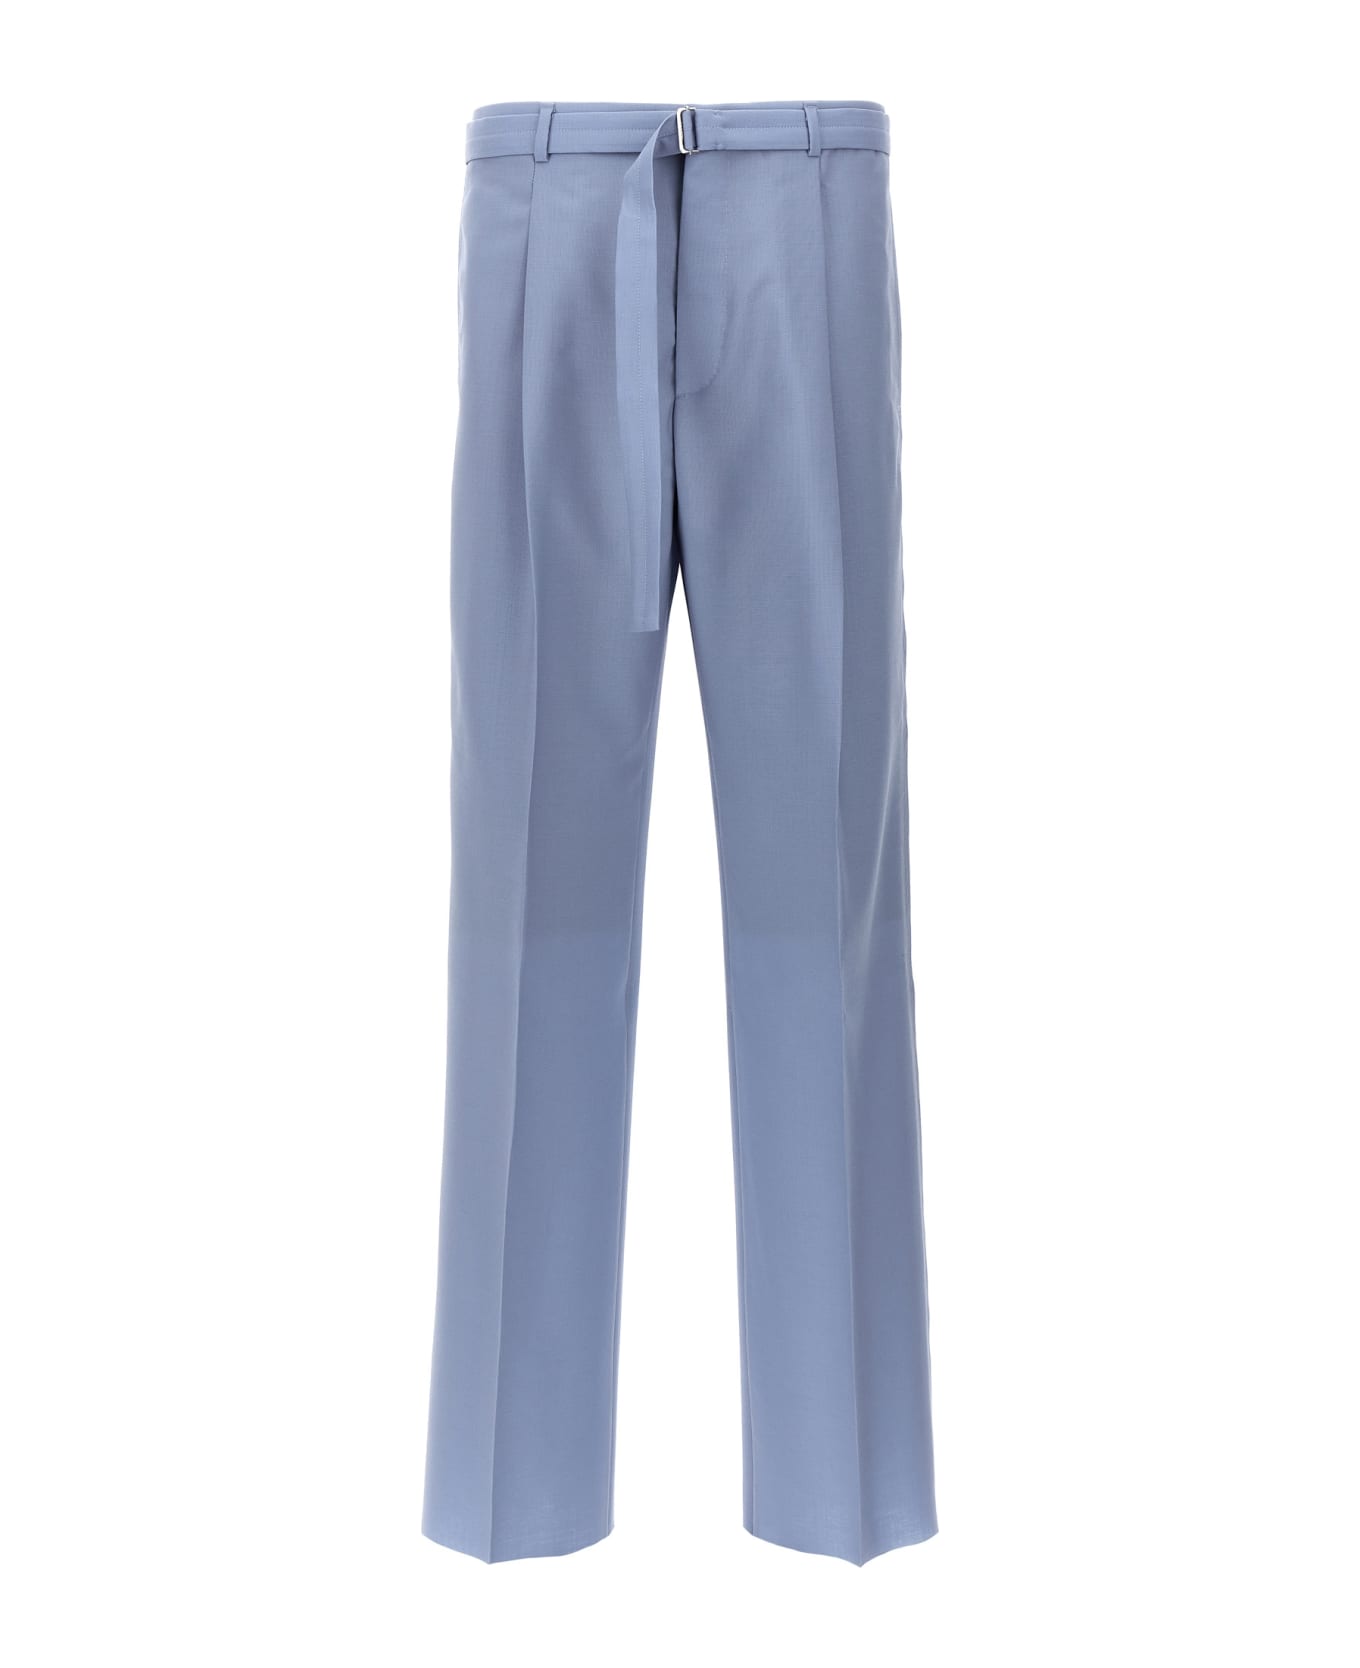 Lanvin Front Pleat Pants - Light Blue